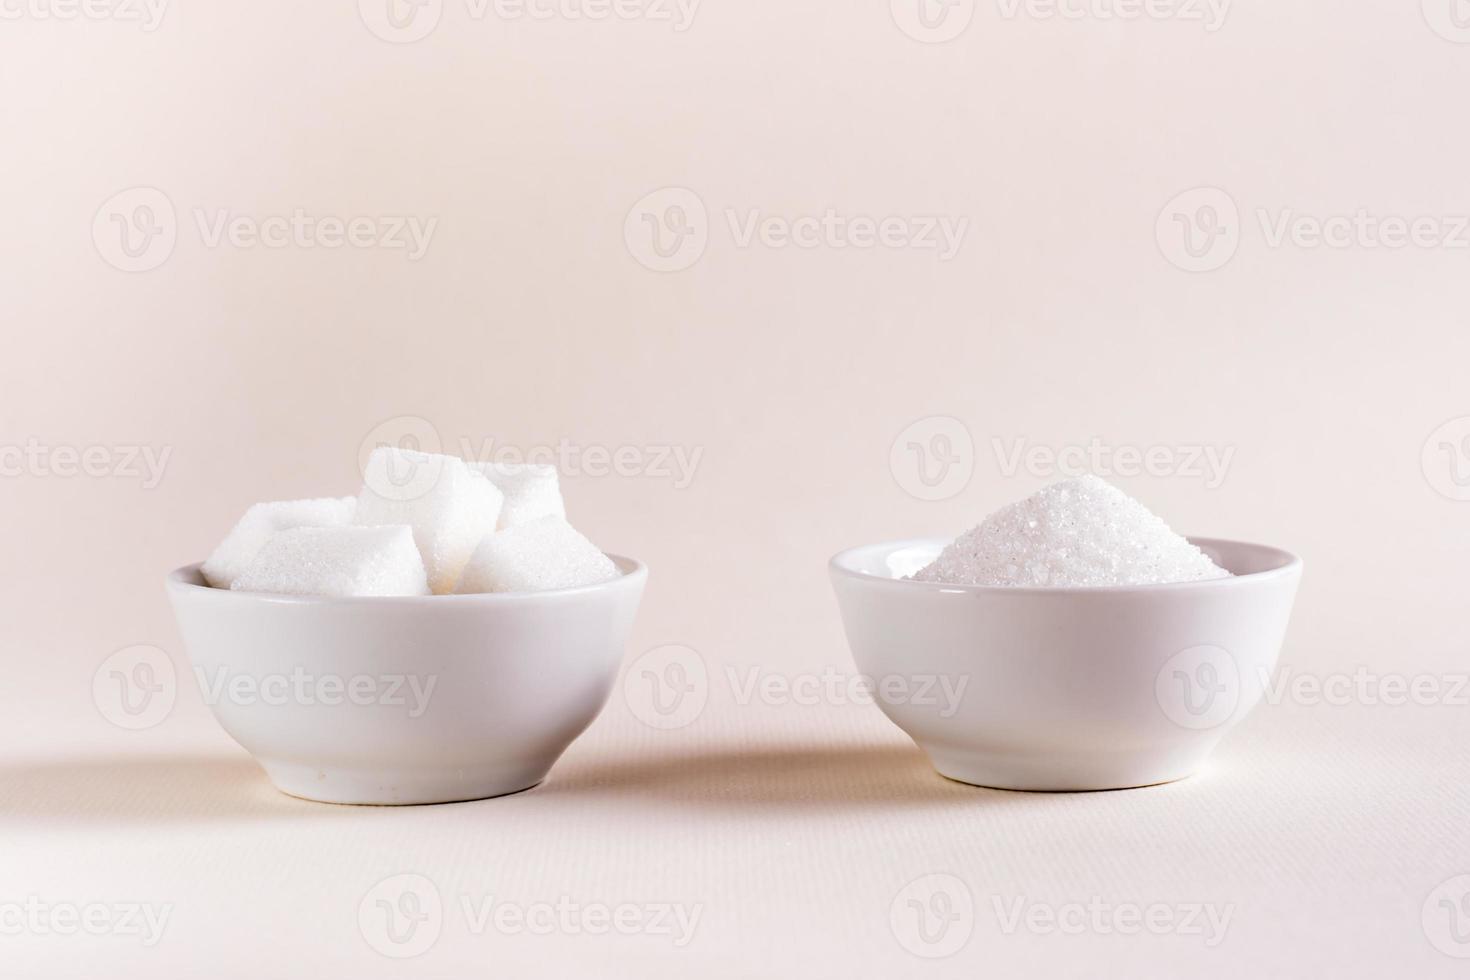 socker kuber och granulerad socker i skålar på en ljus bakgrund. välja mellan typer av socker foto